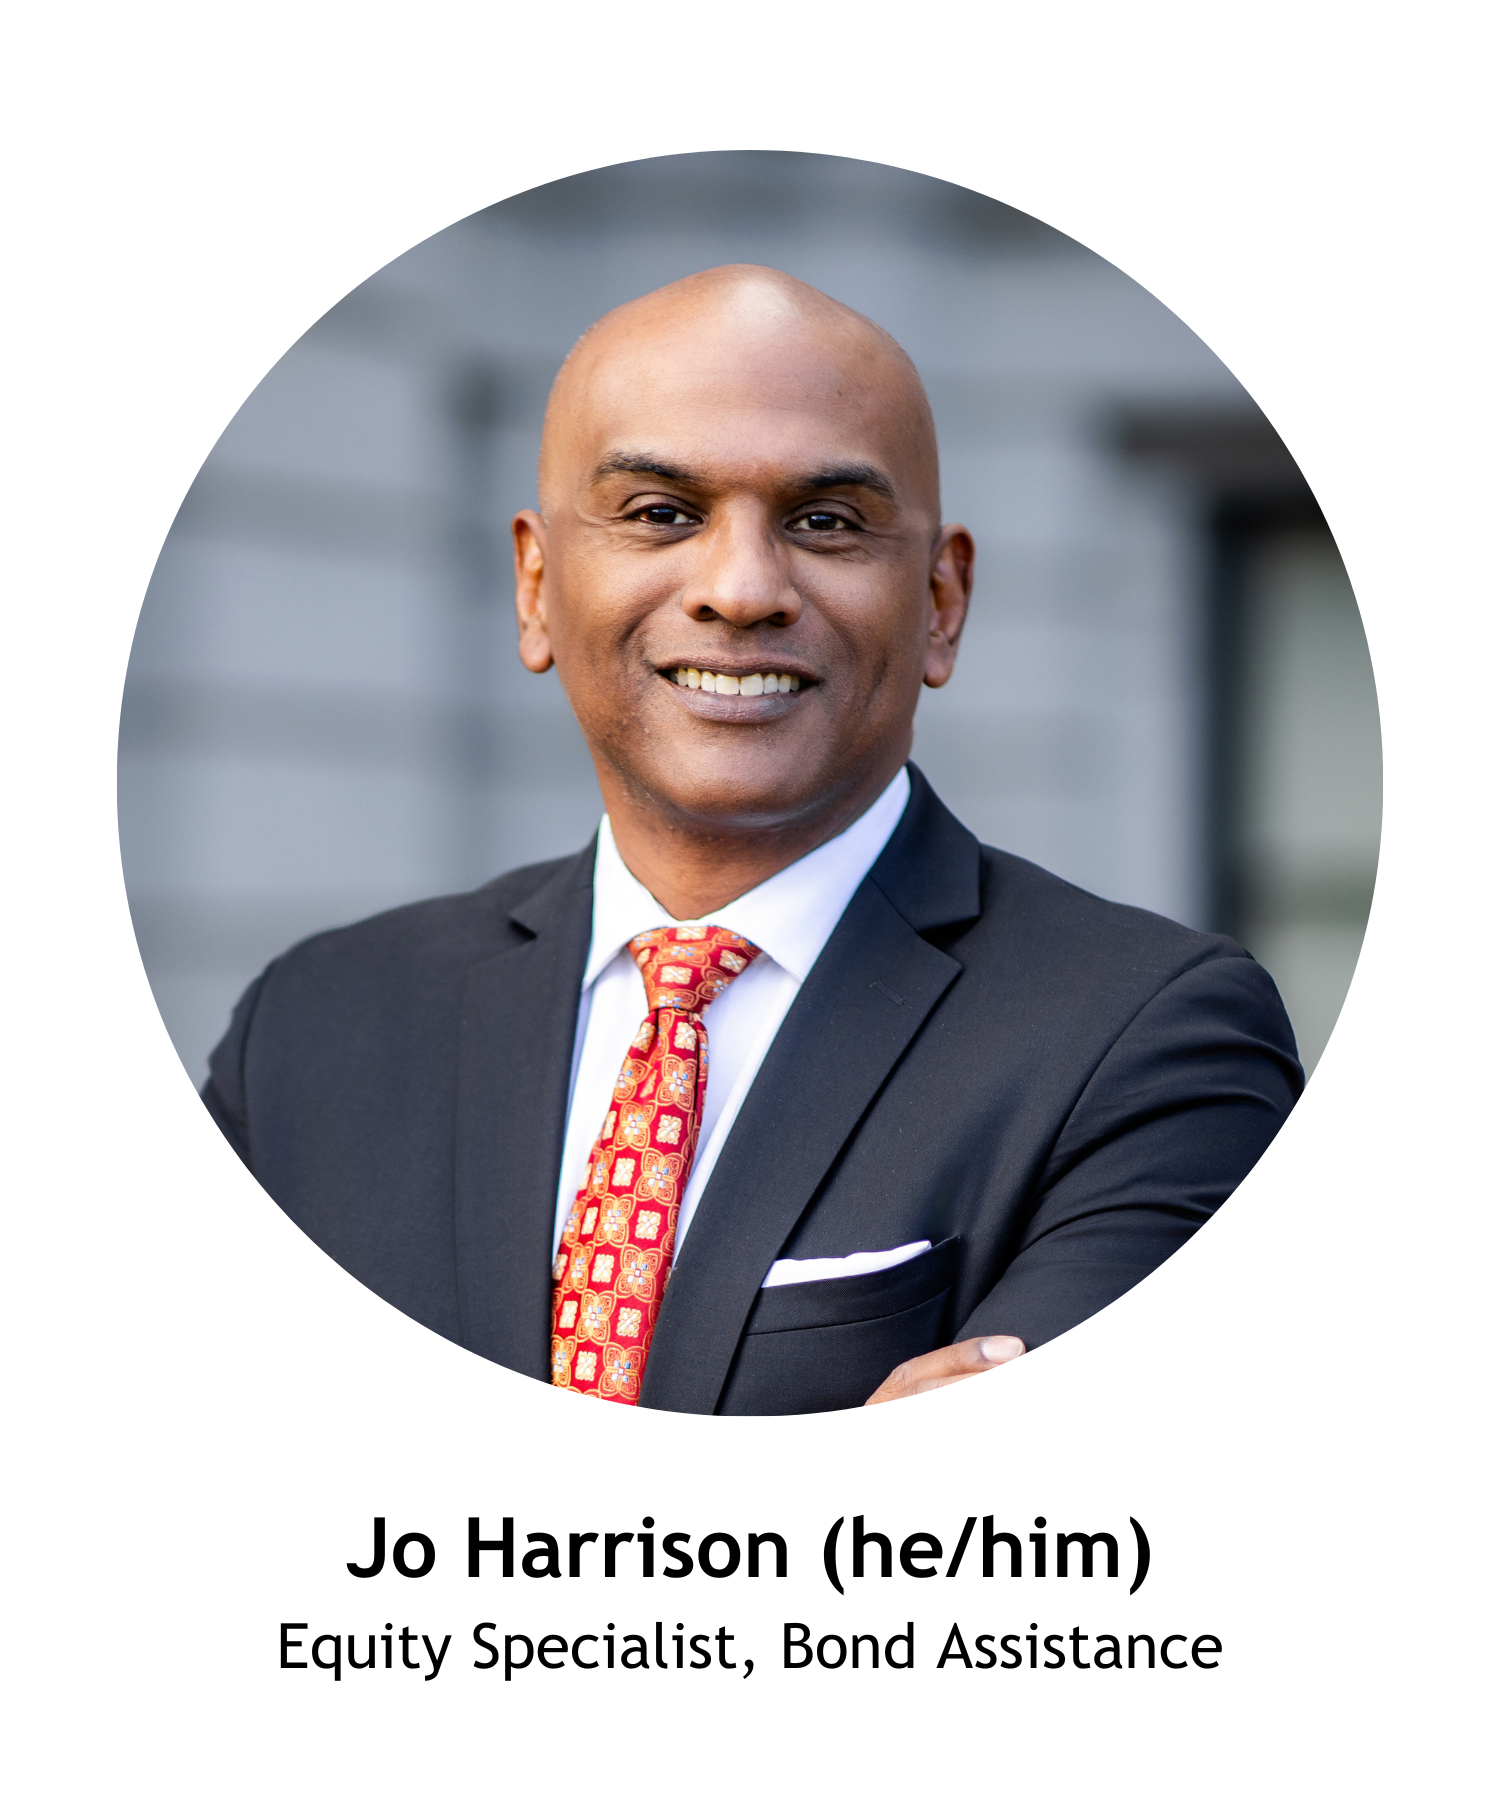 Jo Harrison (he/him), Equity Specialist, Bond Assistance